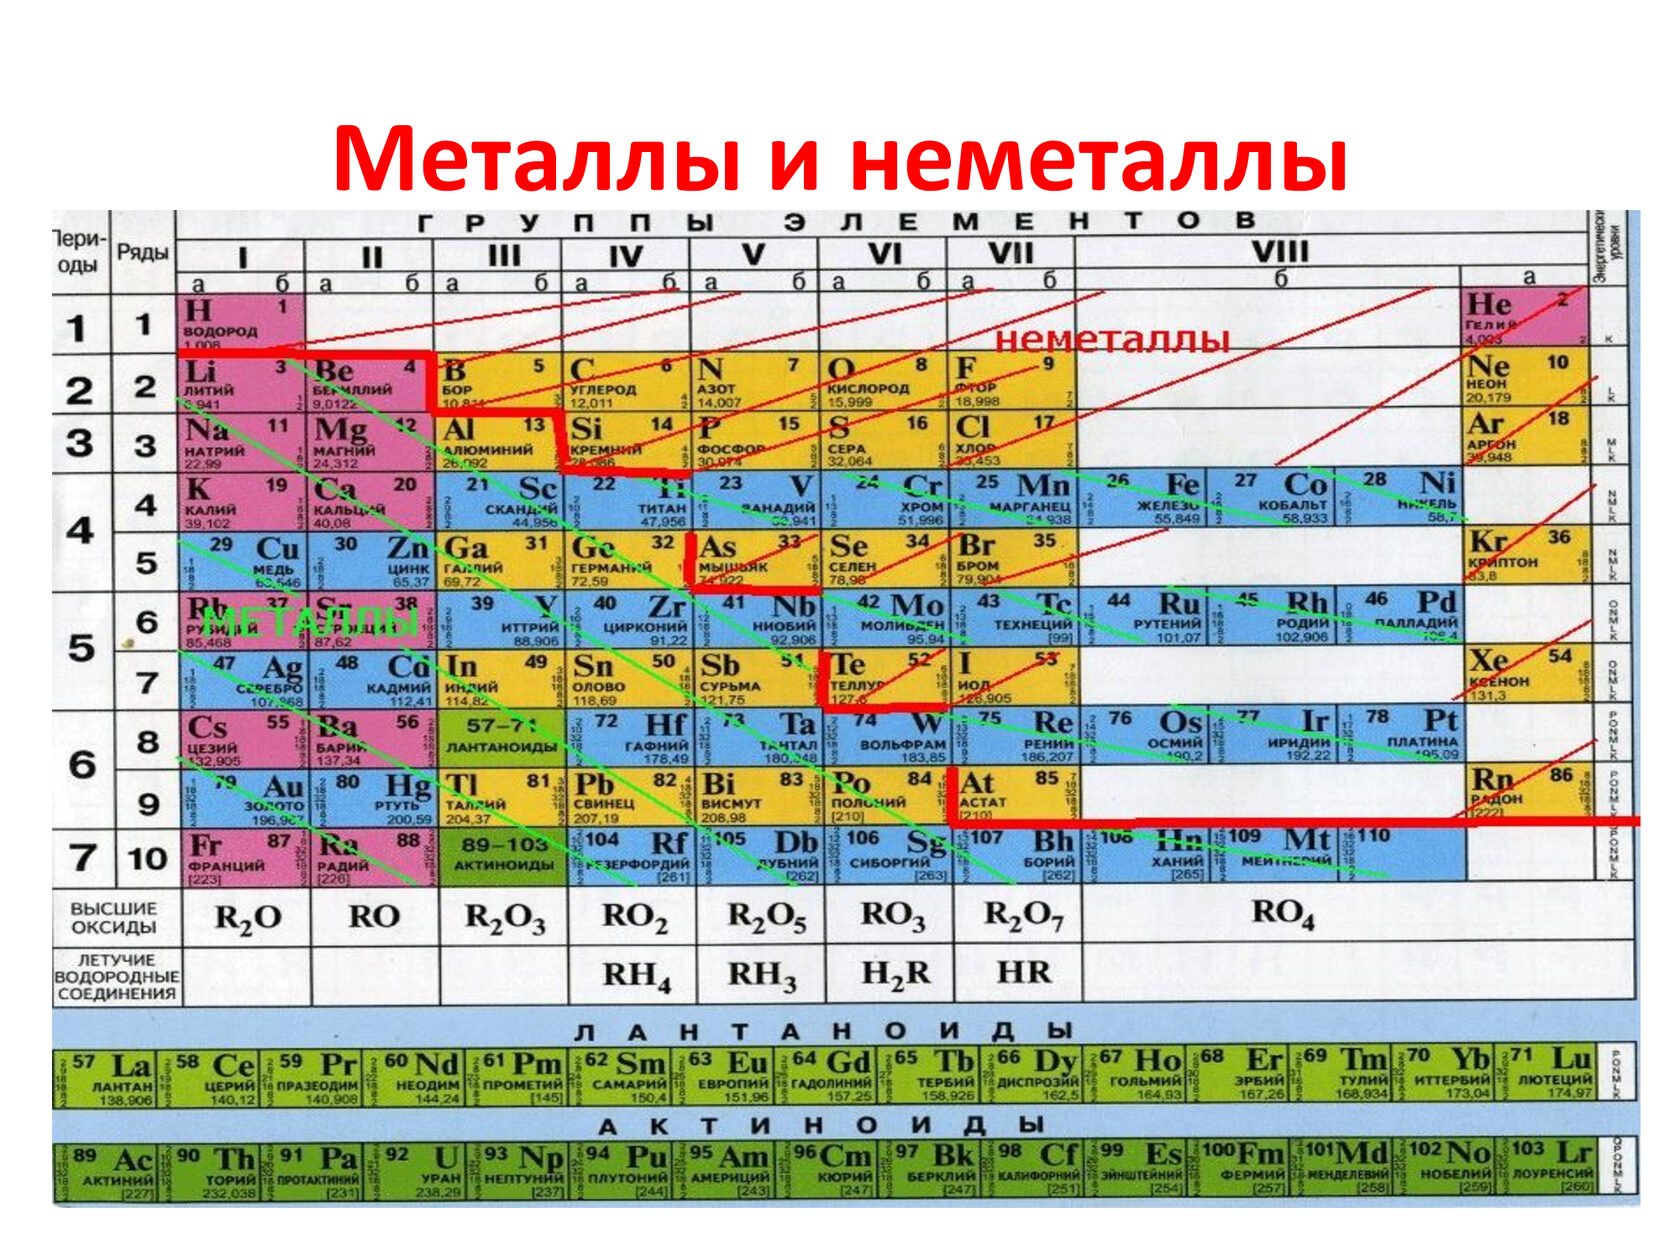 Hg неметалл. Таблица Менделеева металлы и неметаллы. Химия металлы и неметаллы таблица. Химические элементы металлы и неметаллы. Таблица Менделеева металл или неметалл.